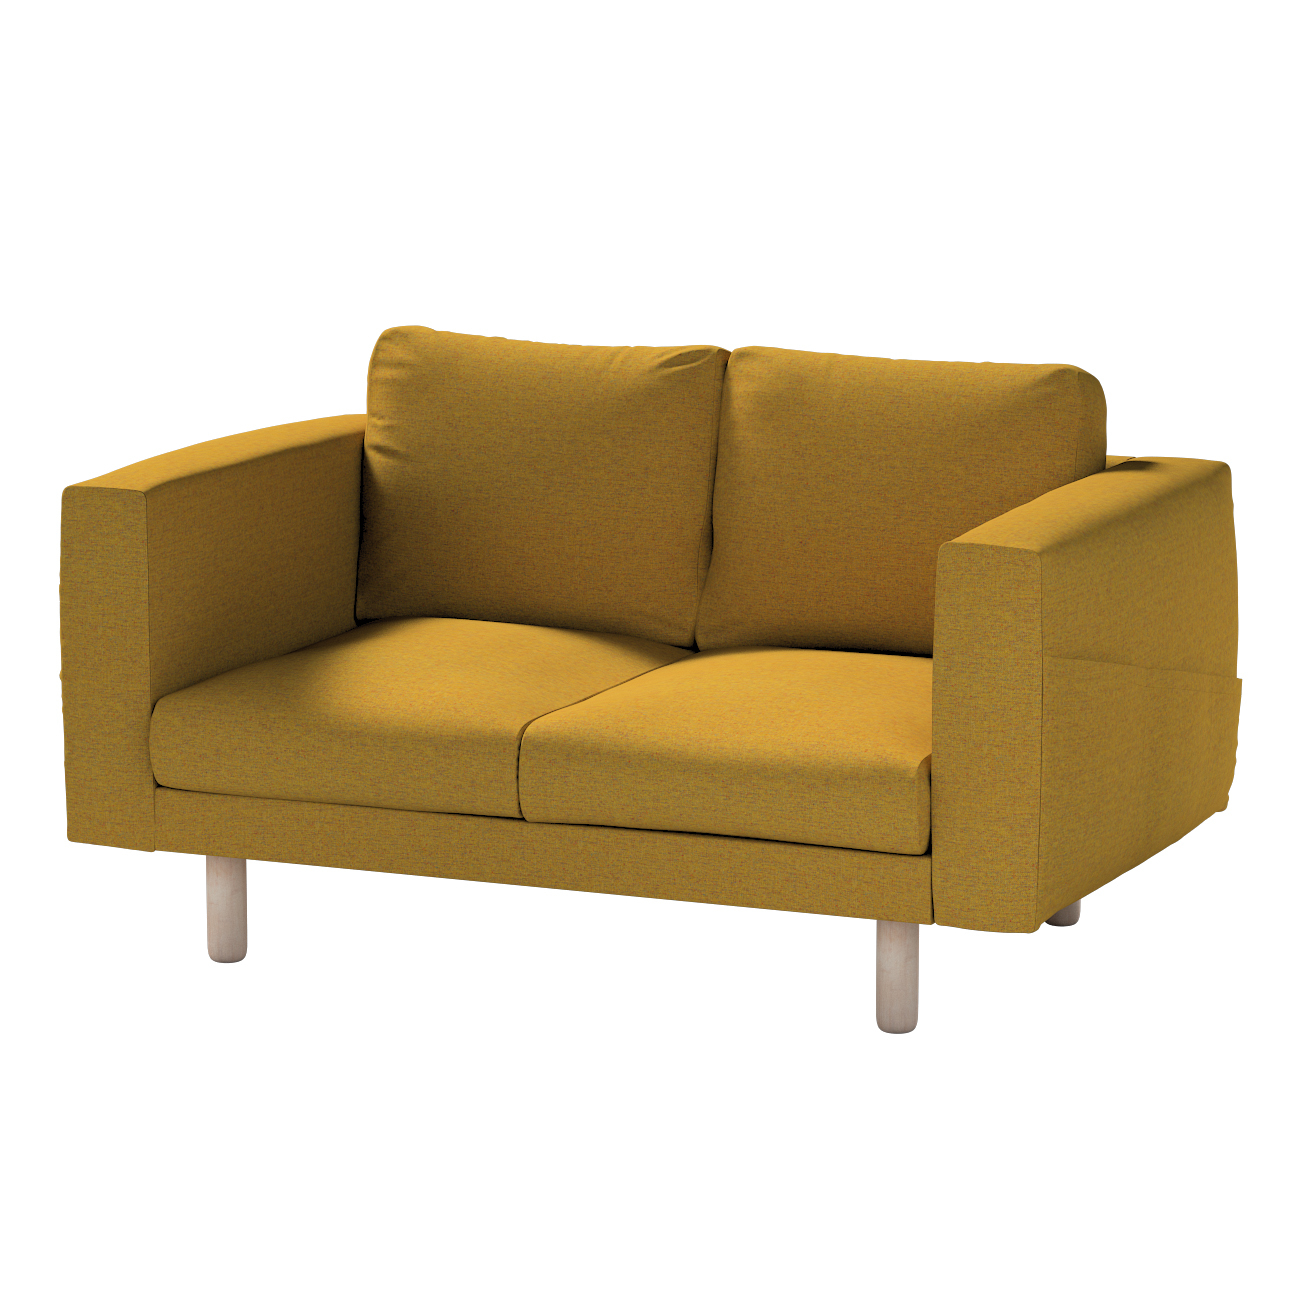 Bezug für Norsborg 2-Sitzer Sofa, gelb, Norsborg 2-Sitzer Sofabezug, Madrid günstig online kaufen